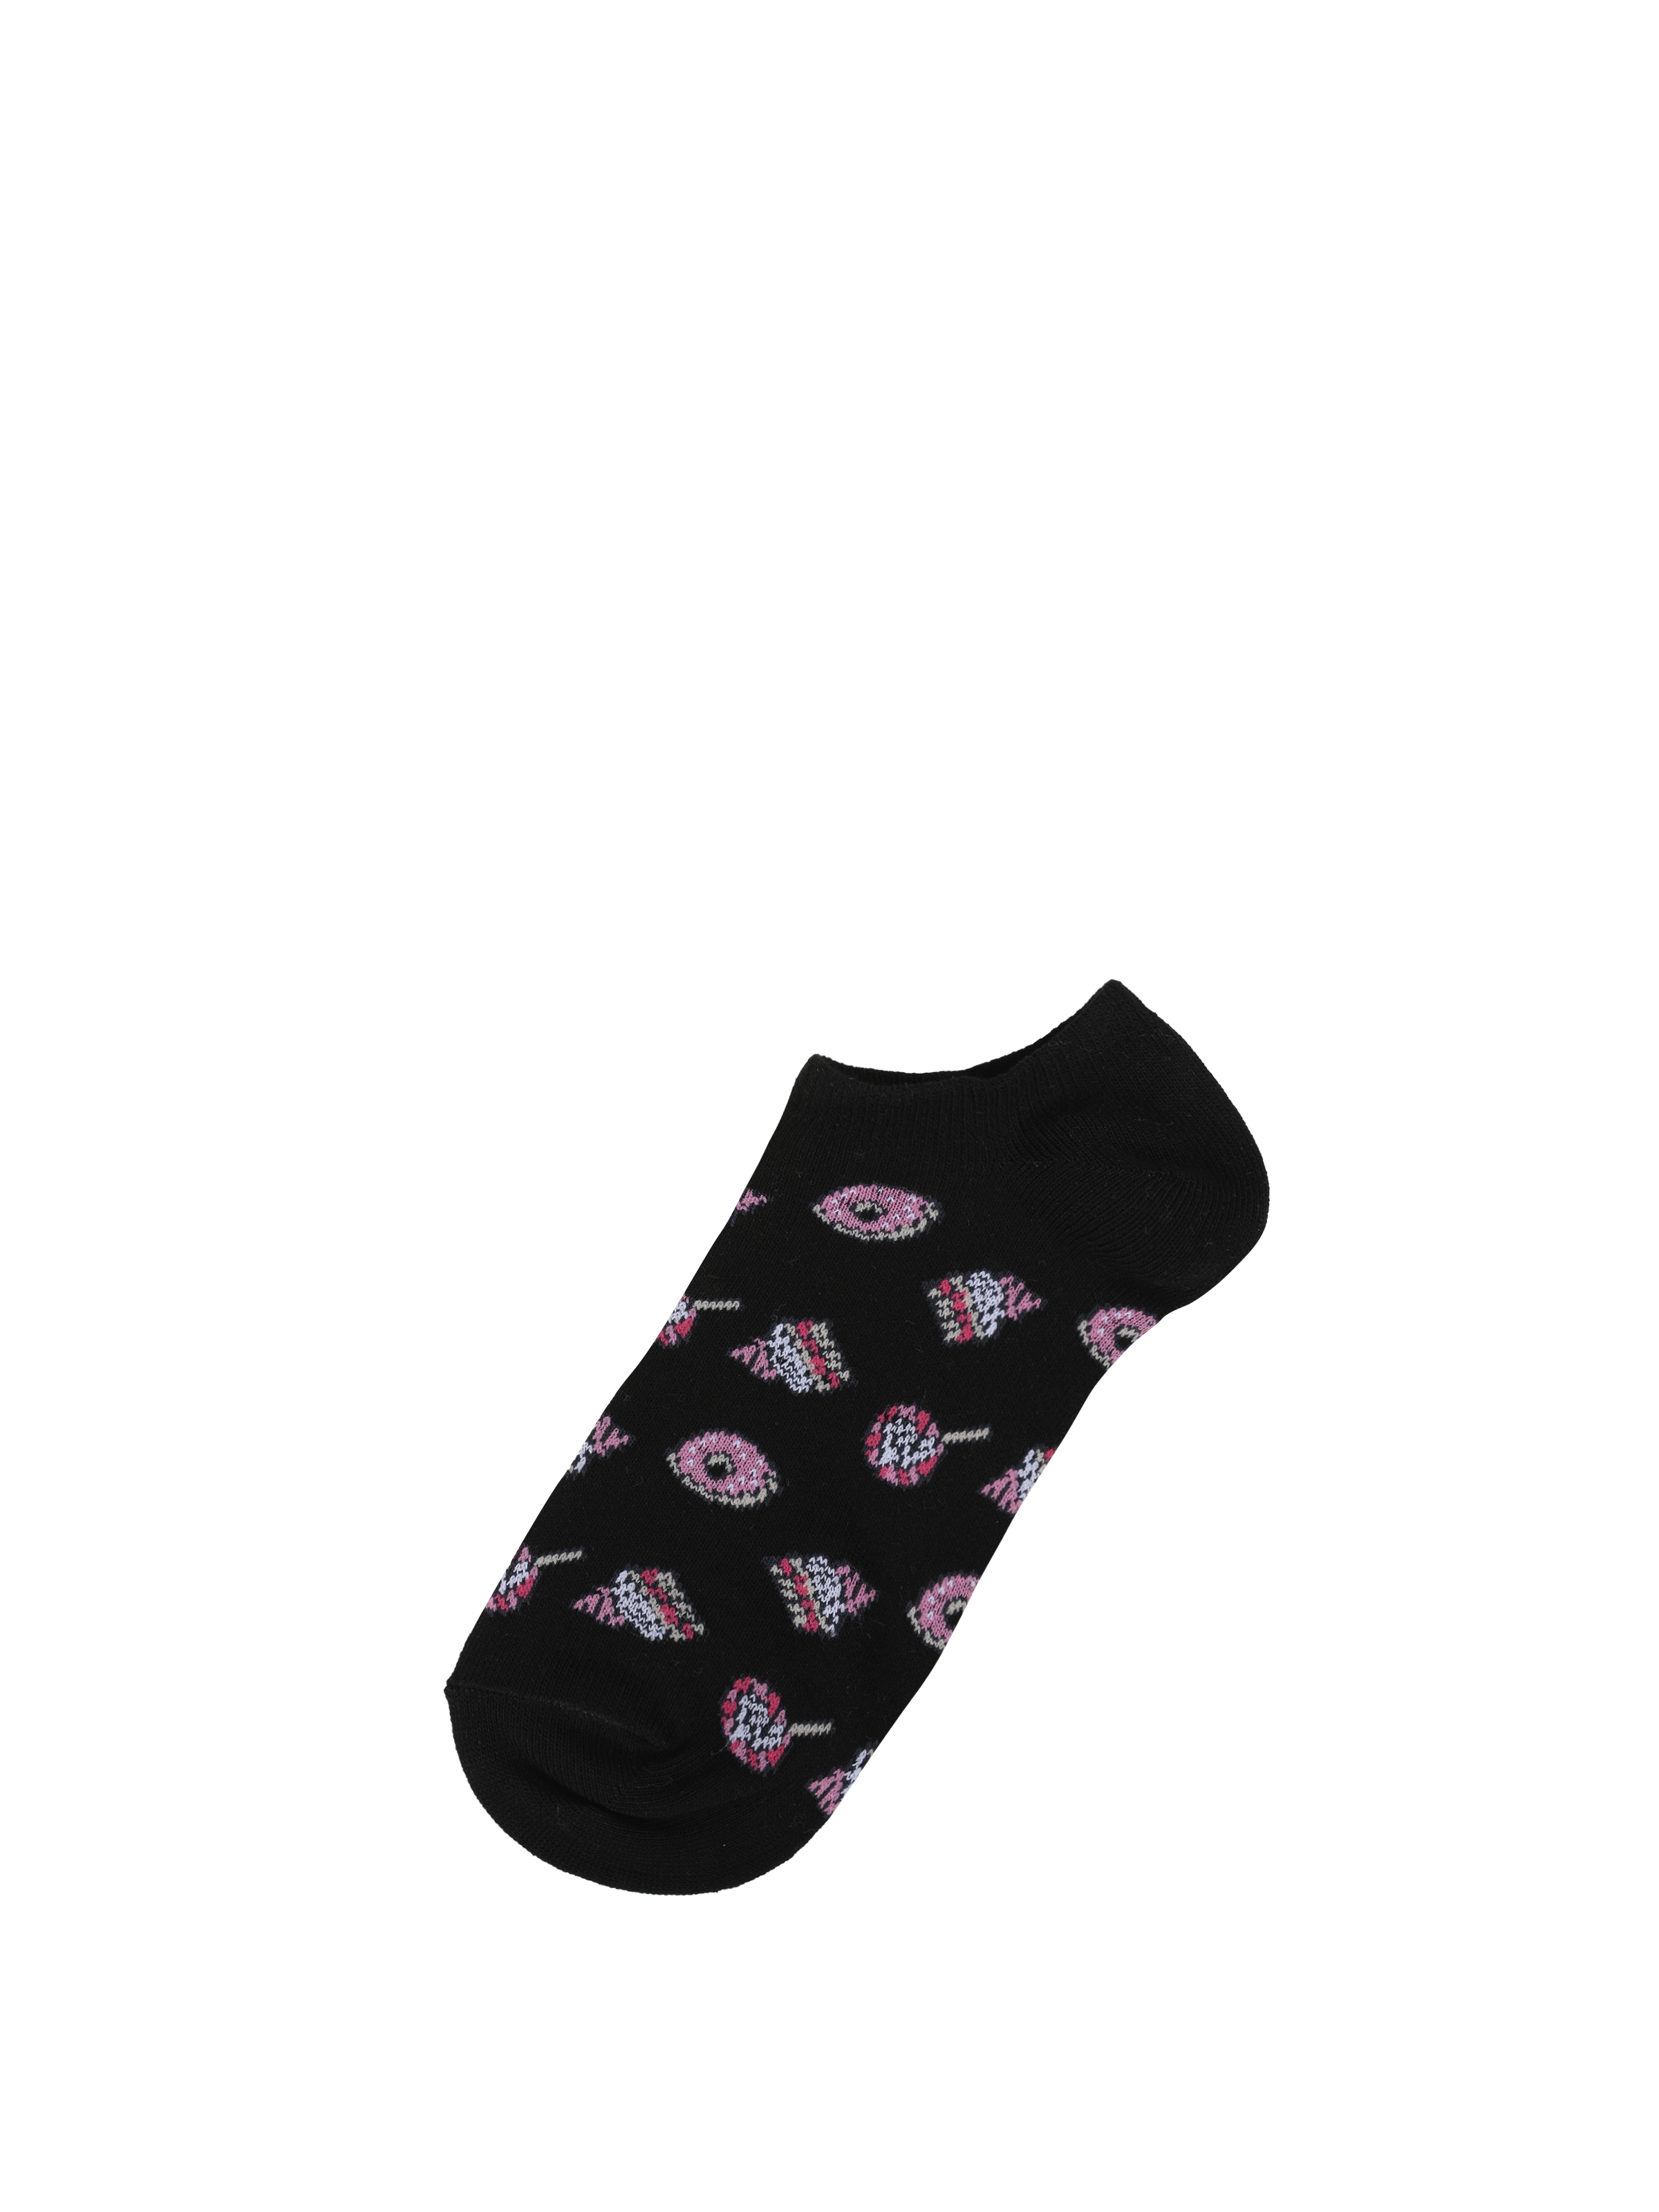 Baskılı Siyah Kadın Çorap Cl1062995